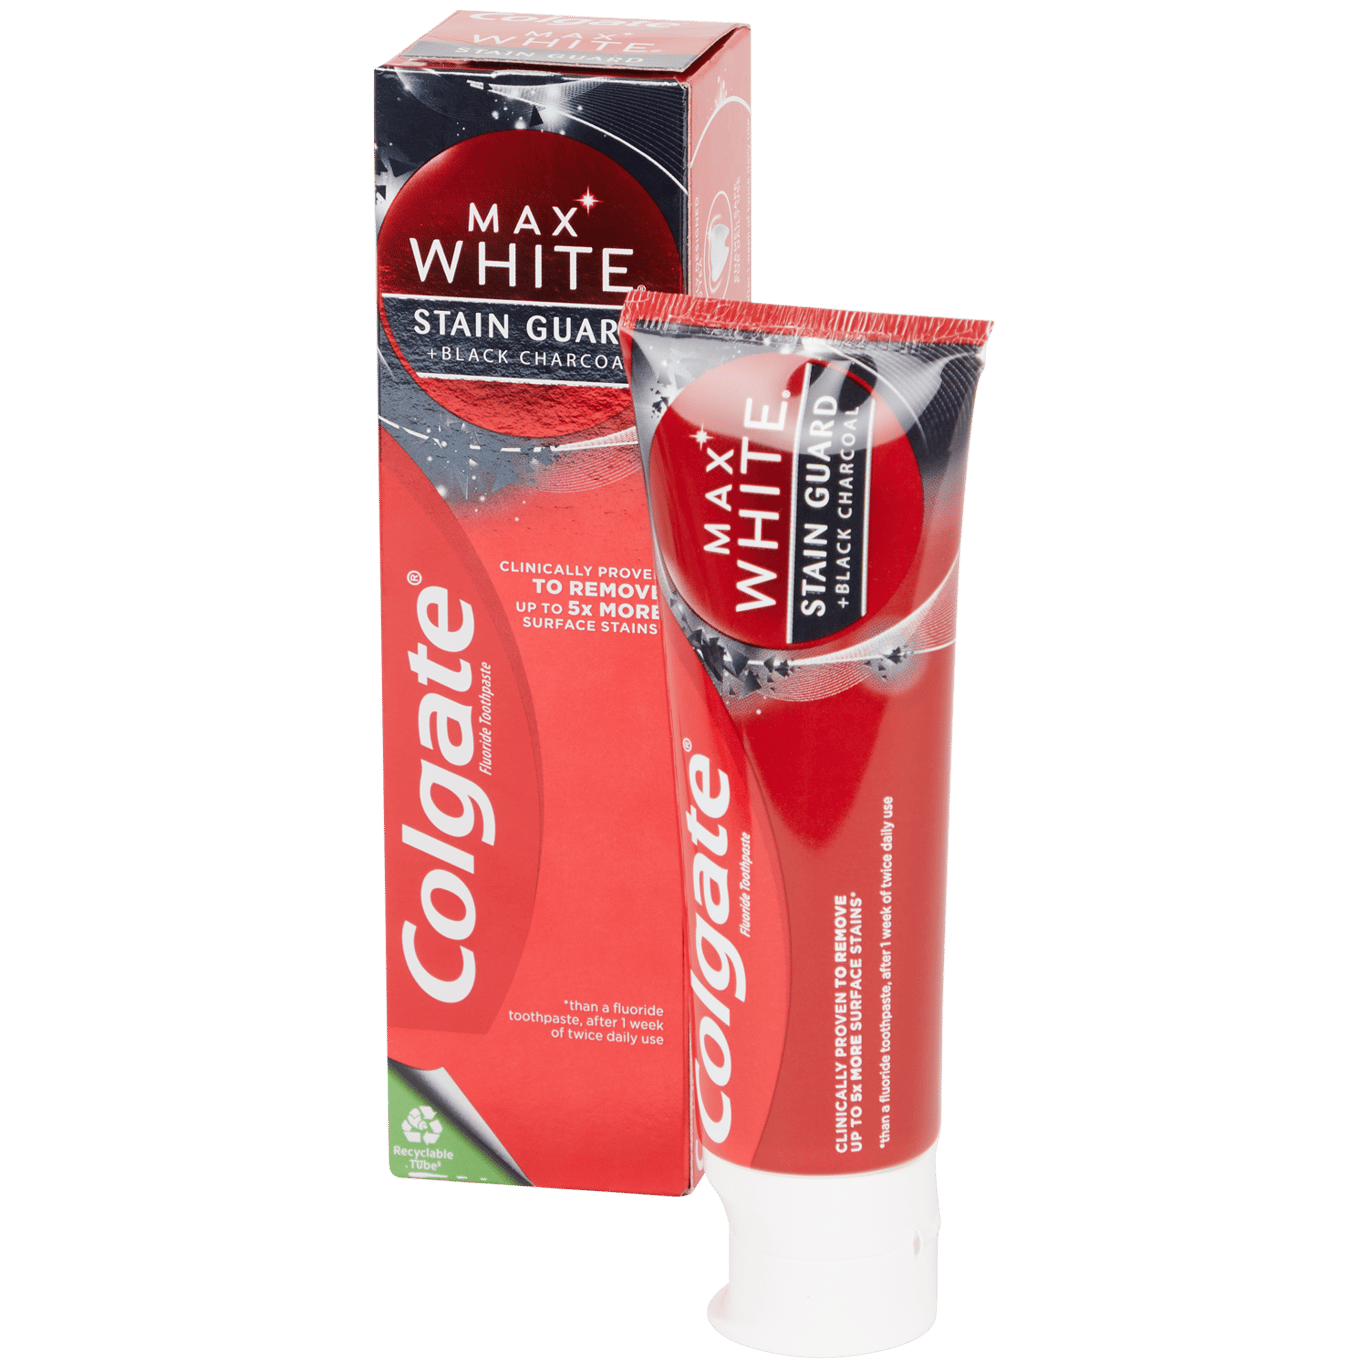 Colgate tandpasta Max White Guard | Action.com